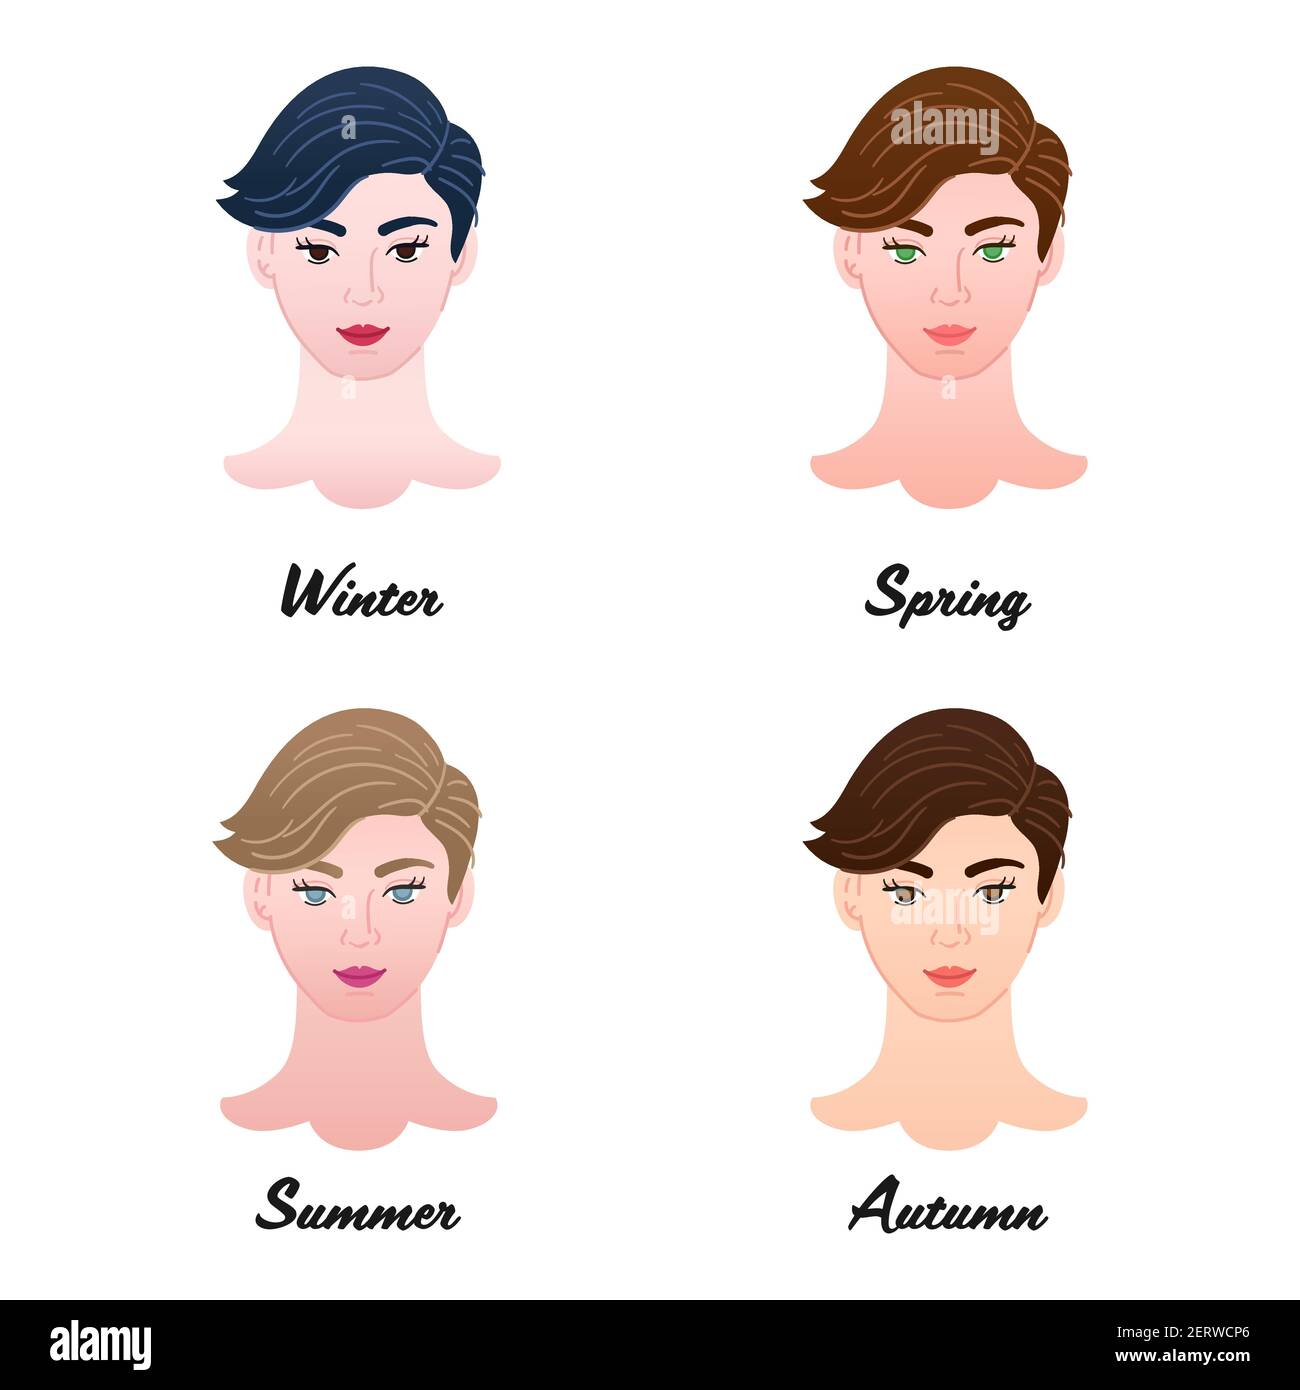 12 colori stagionali. Quattro tipi di colore di apparenze di donne di capelli corti. Inverno, Primavera, Estate e Autunno - insieme di teste di signora isolate vettoriali Illustrazione Vettoriale